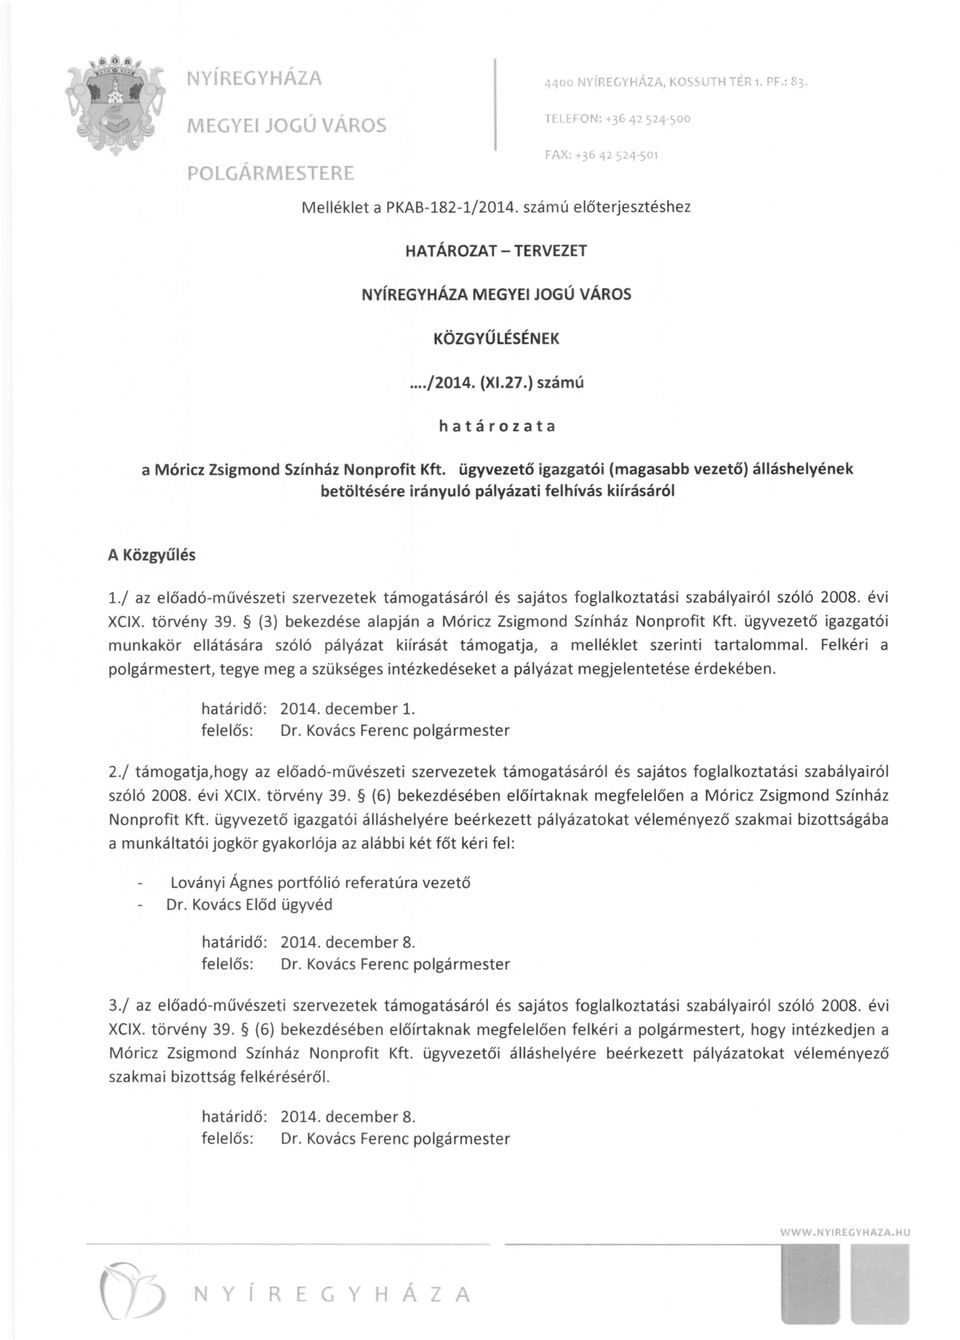 / az előadó-művészeti szervezetek támogatásáról és sajátos foglalkoztatási szabályairól szóló 2008. évi XCIX. törvény 39. (3) bekezdése alapján a Móricz Zsigmond Színház Nonprofit Kft.